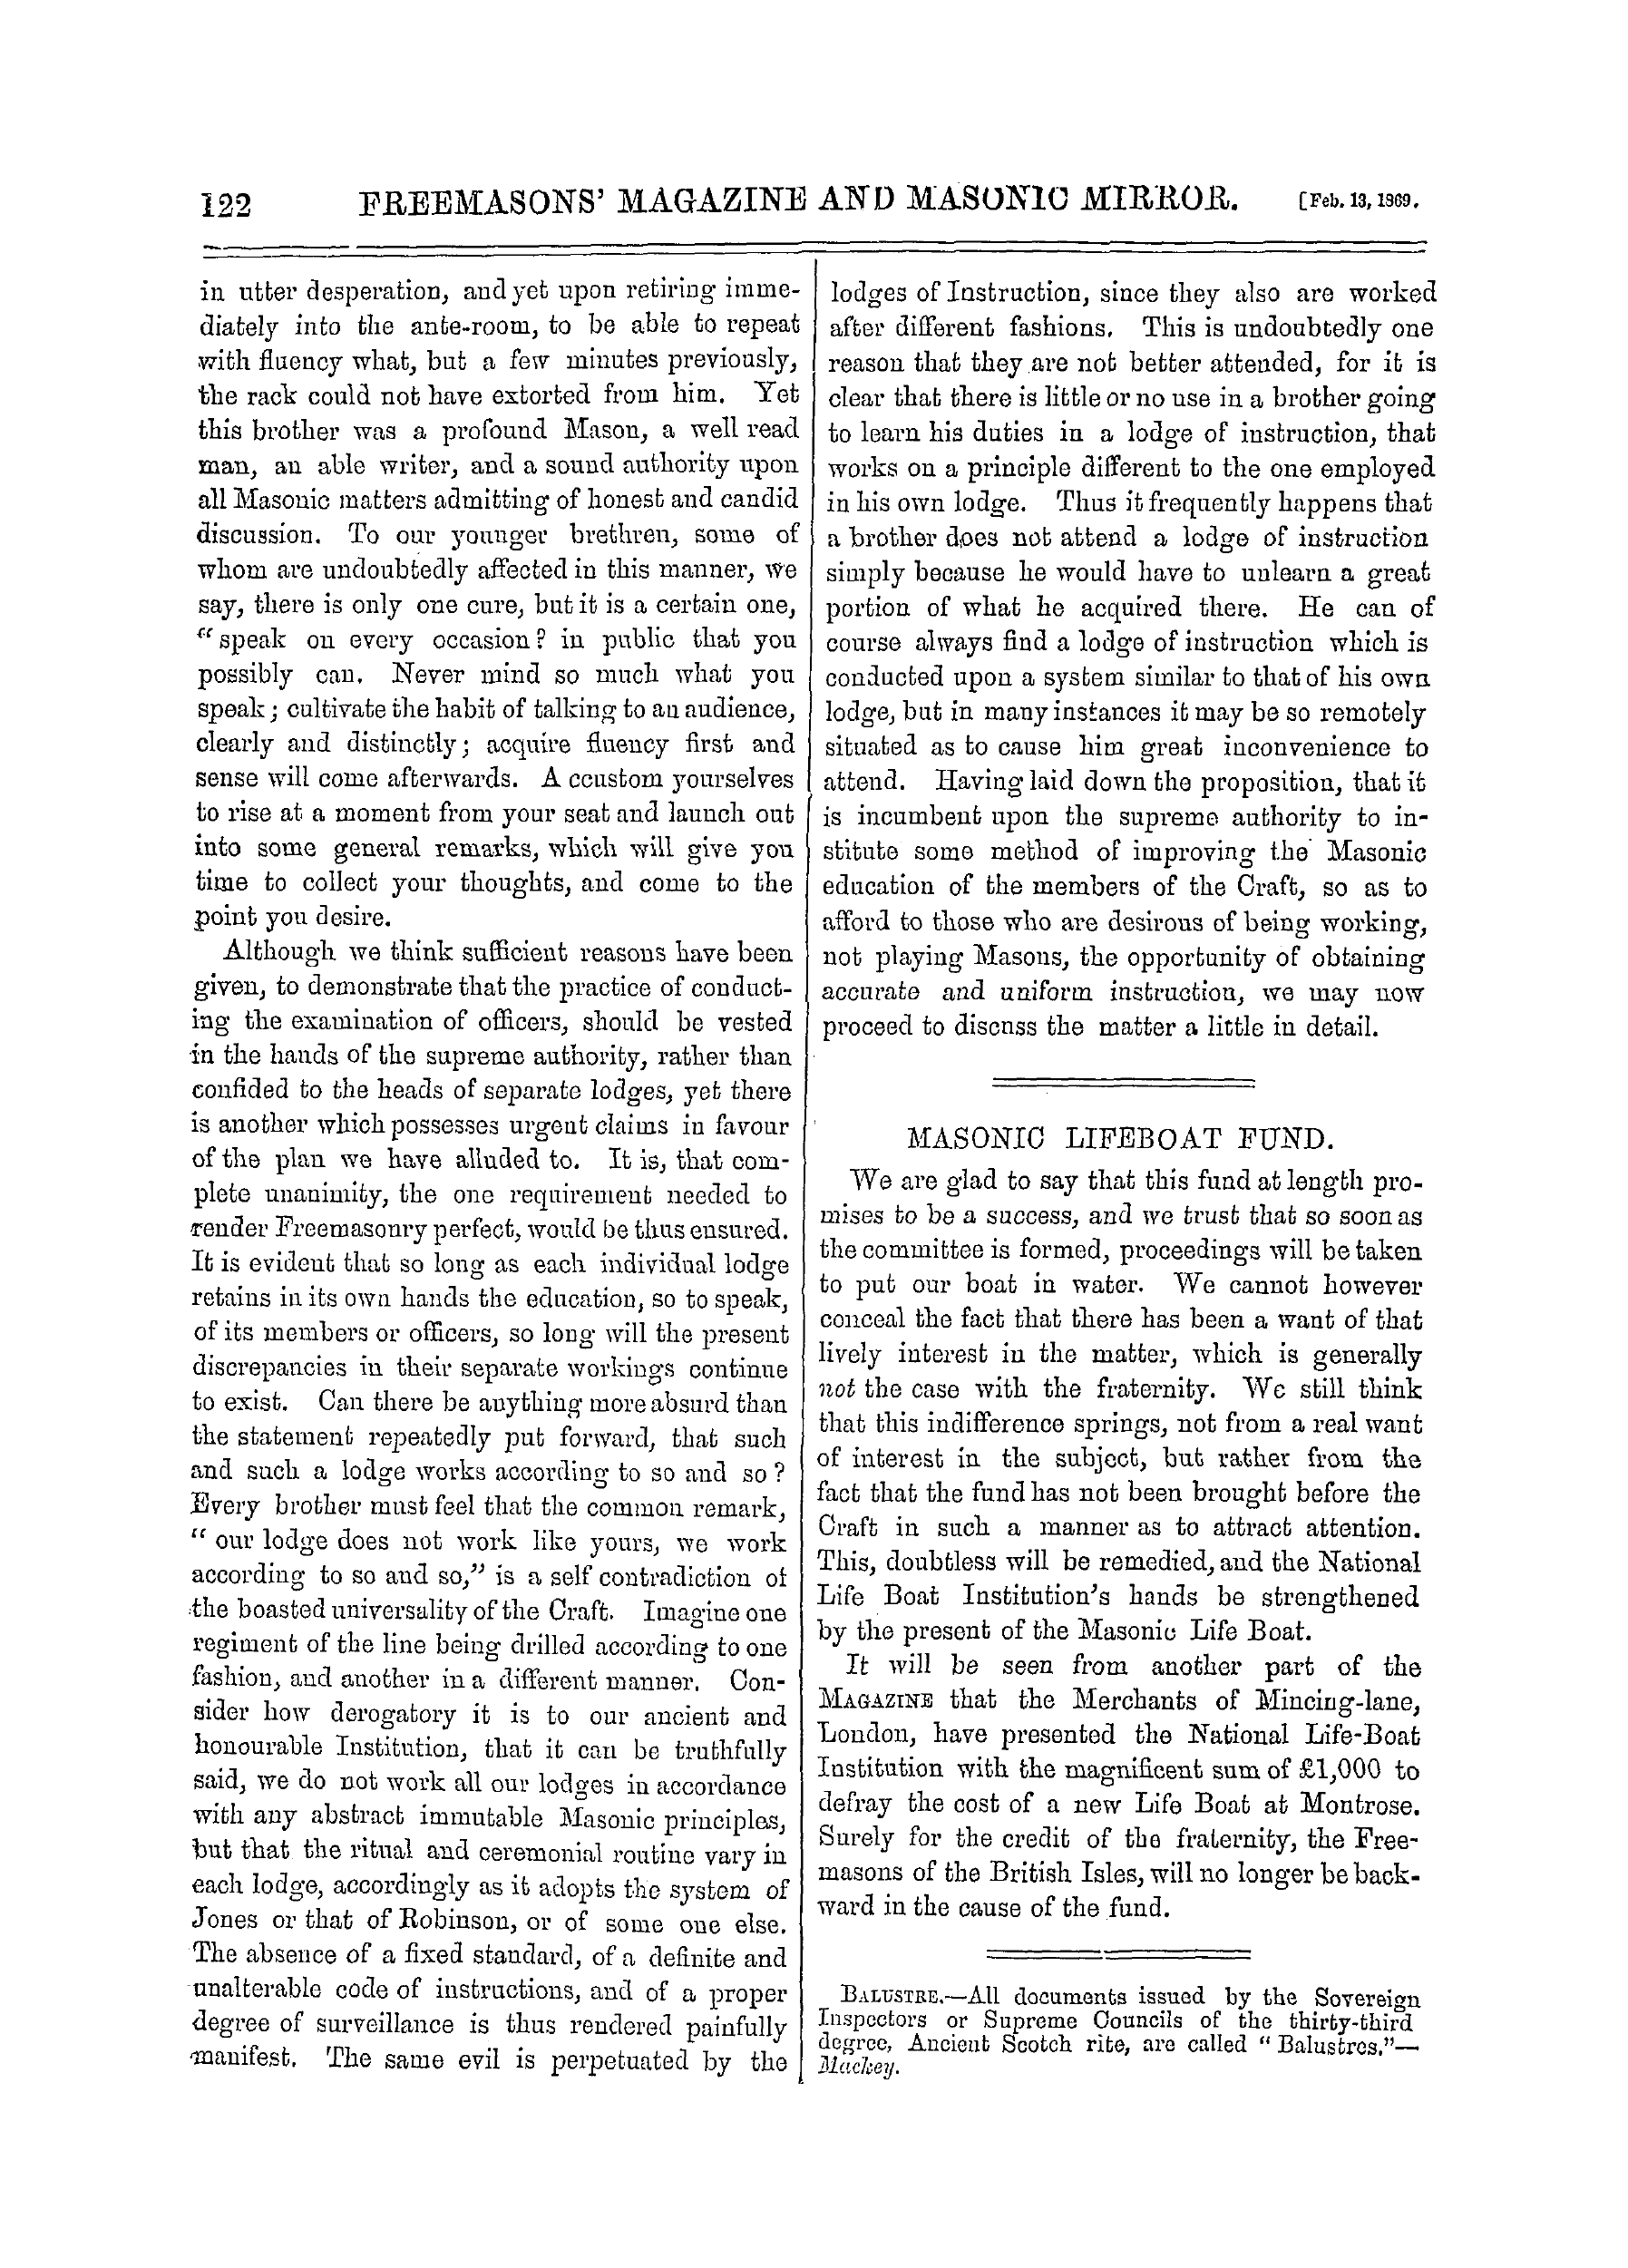 The Freemasons' Monthly Magazine: 1869-02-13: 2